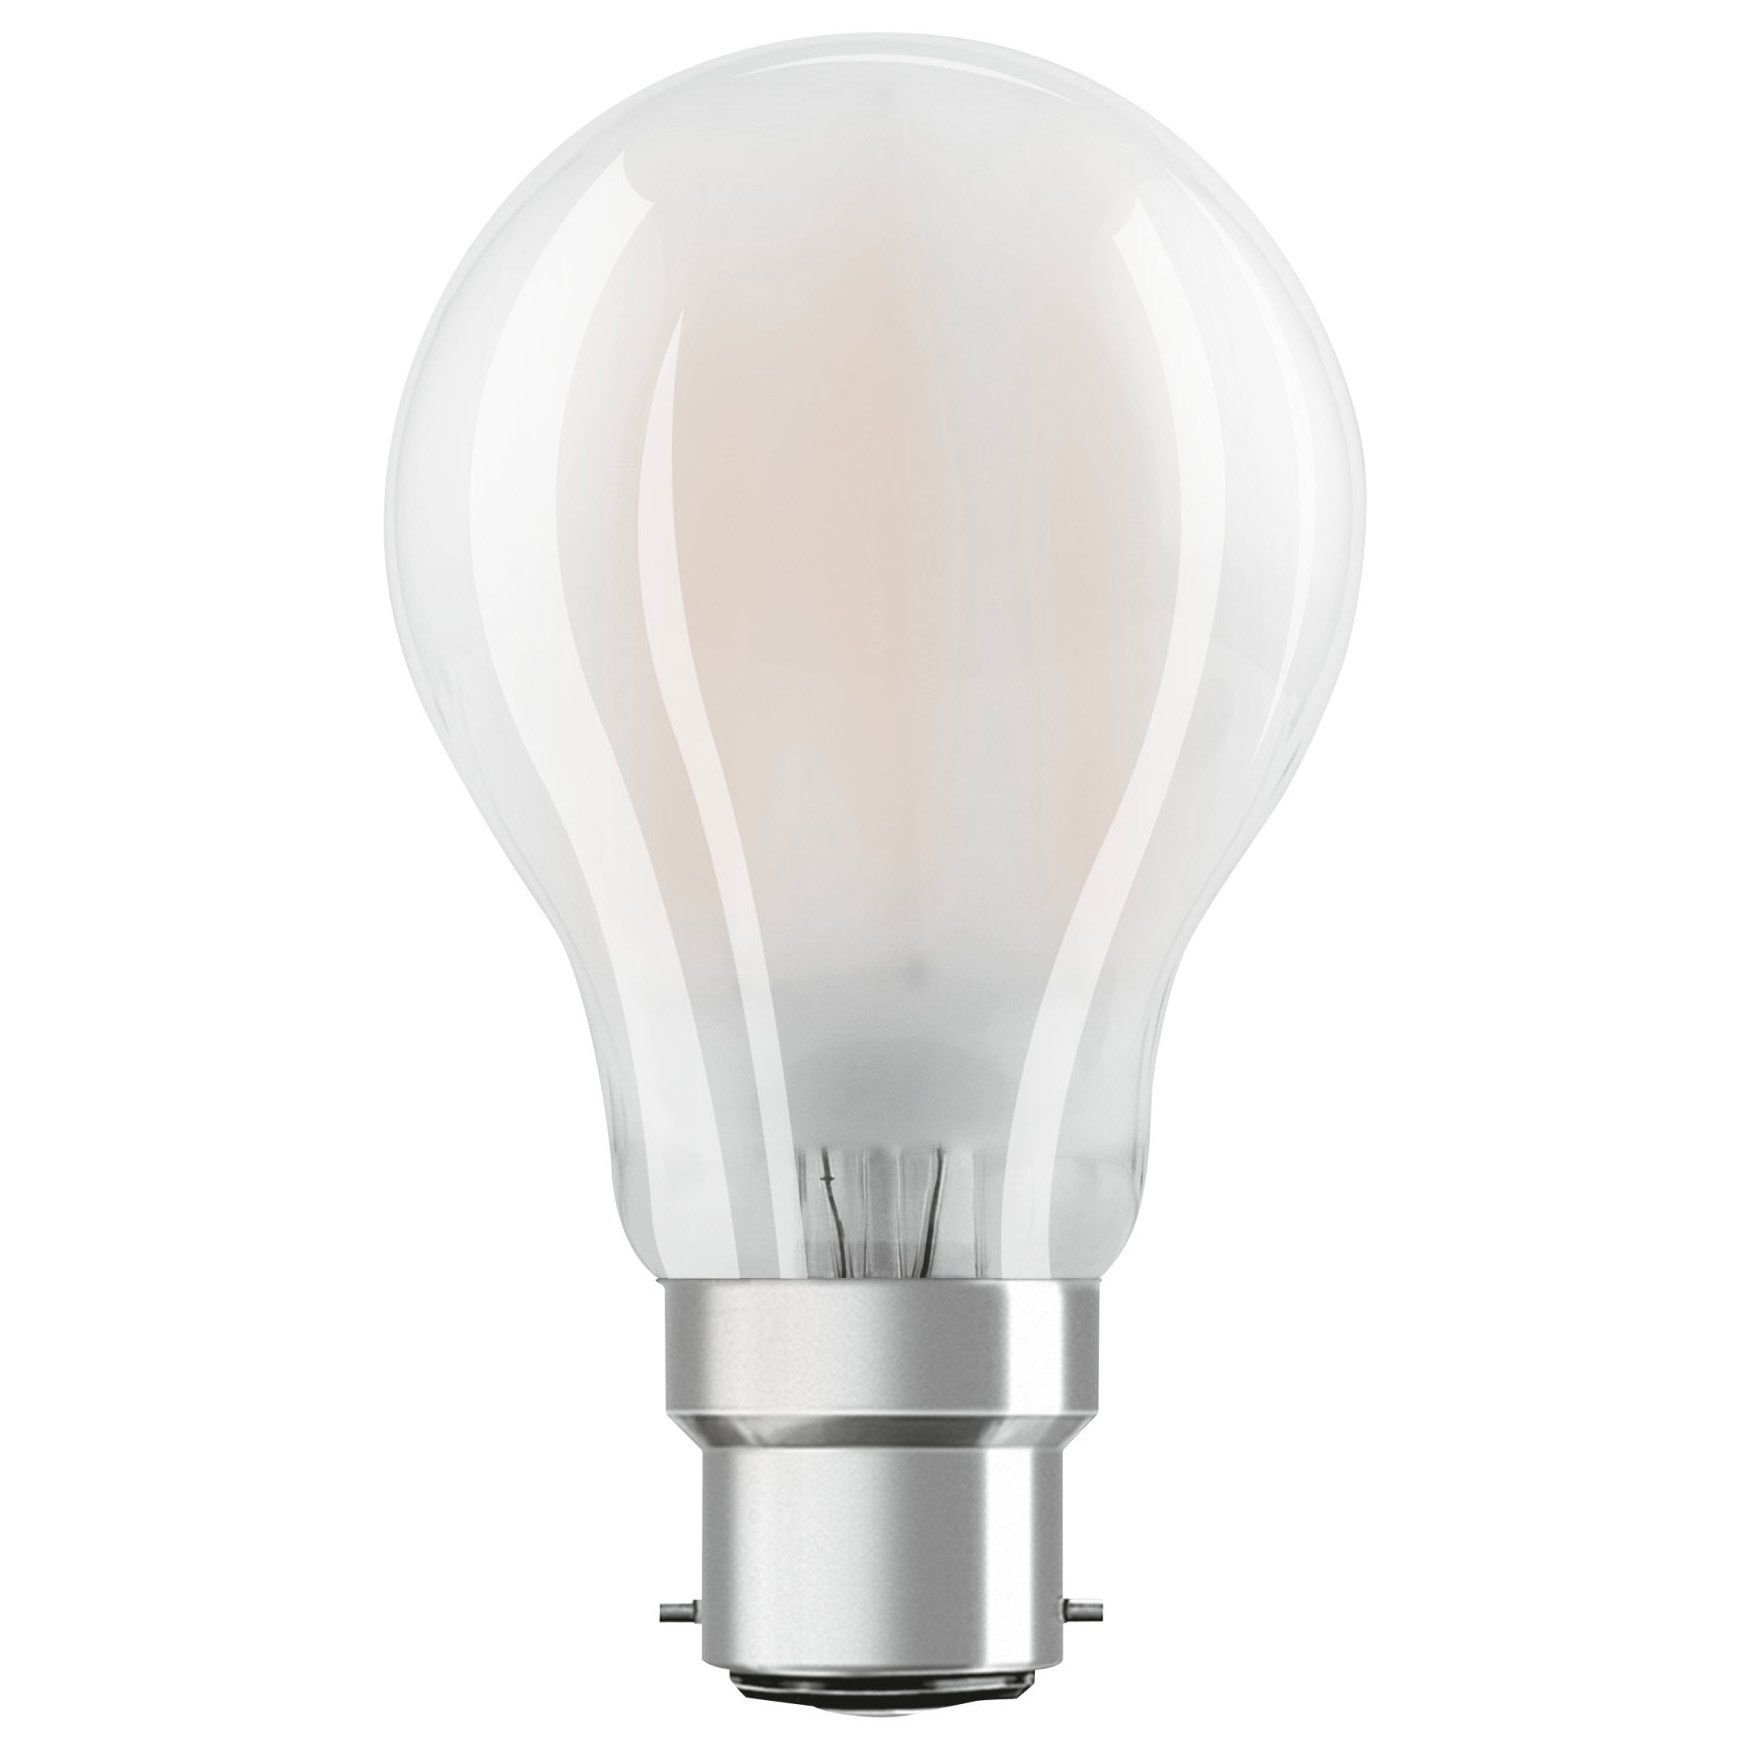 Ampoule LED B22 OPALE éclairage blanc chaud 6W 806 lumens Ø6cm